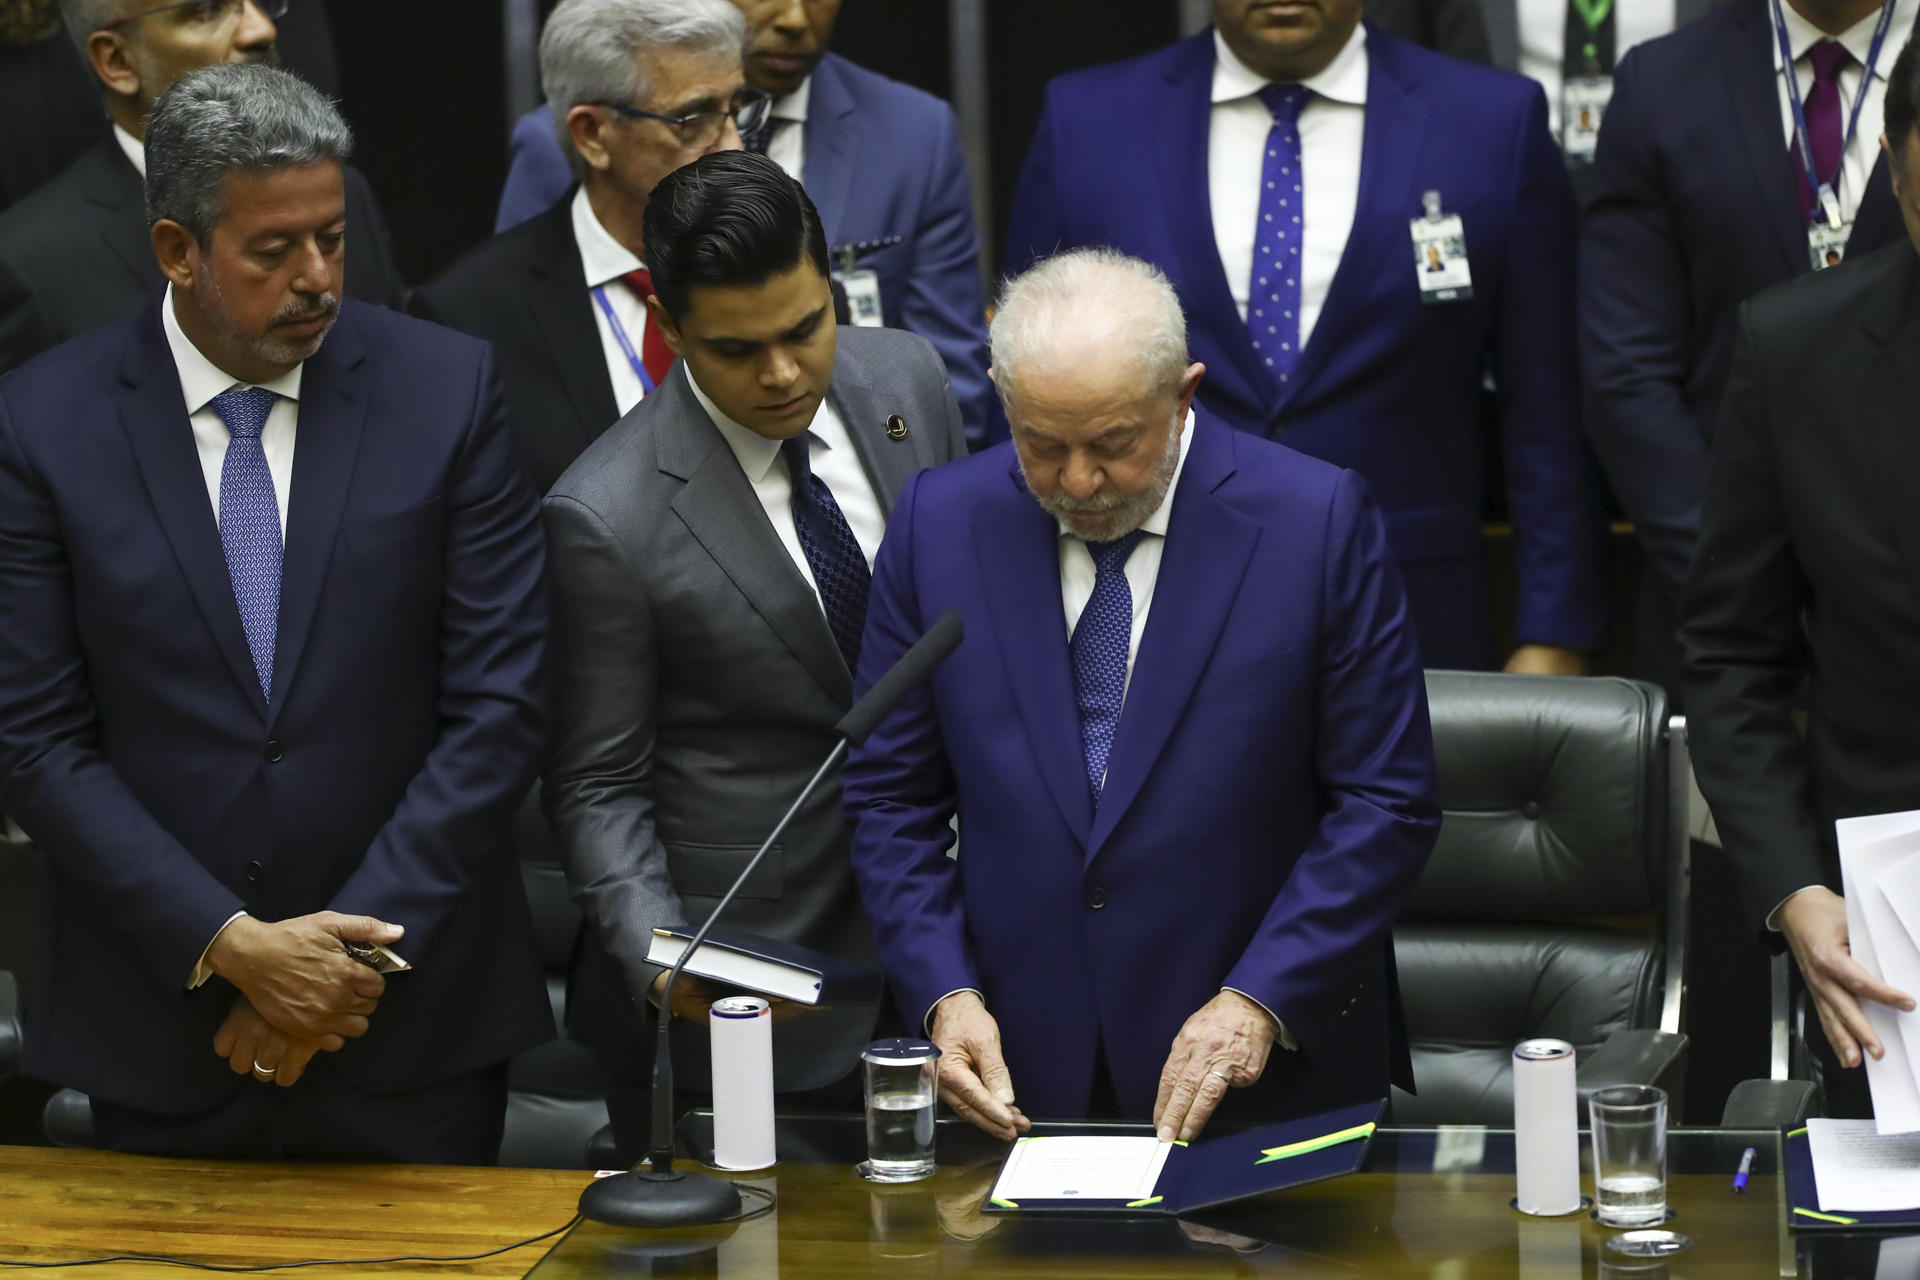 nuevo presidente brasil lula da silva